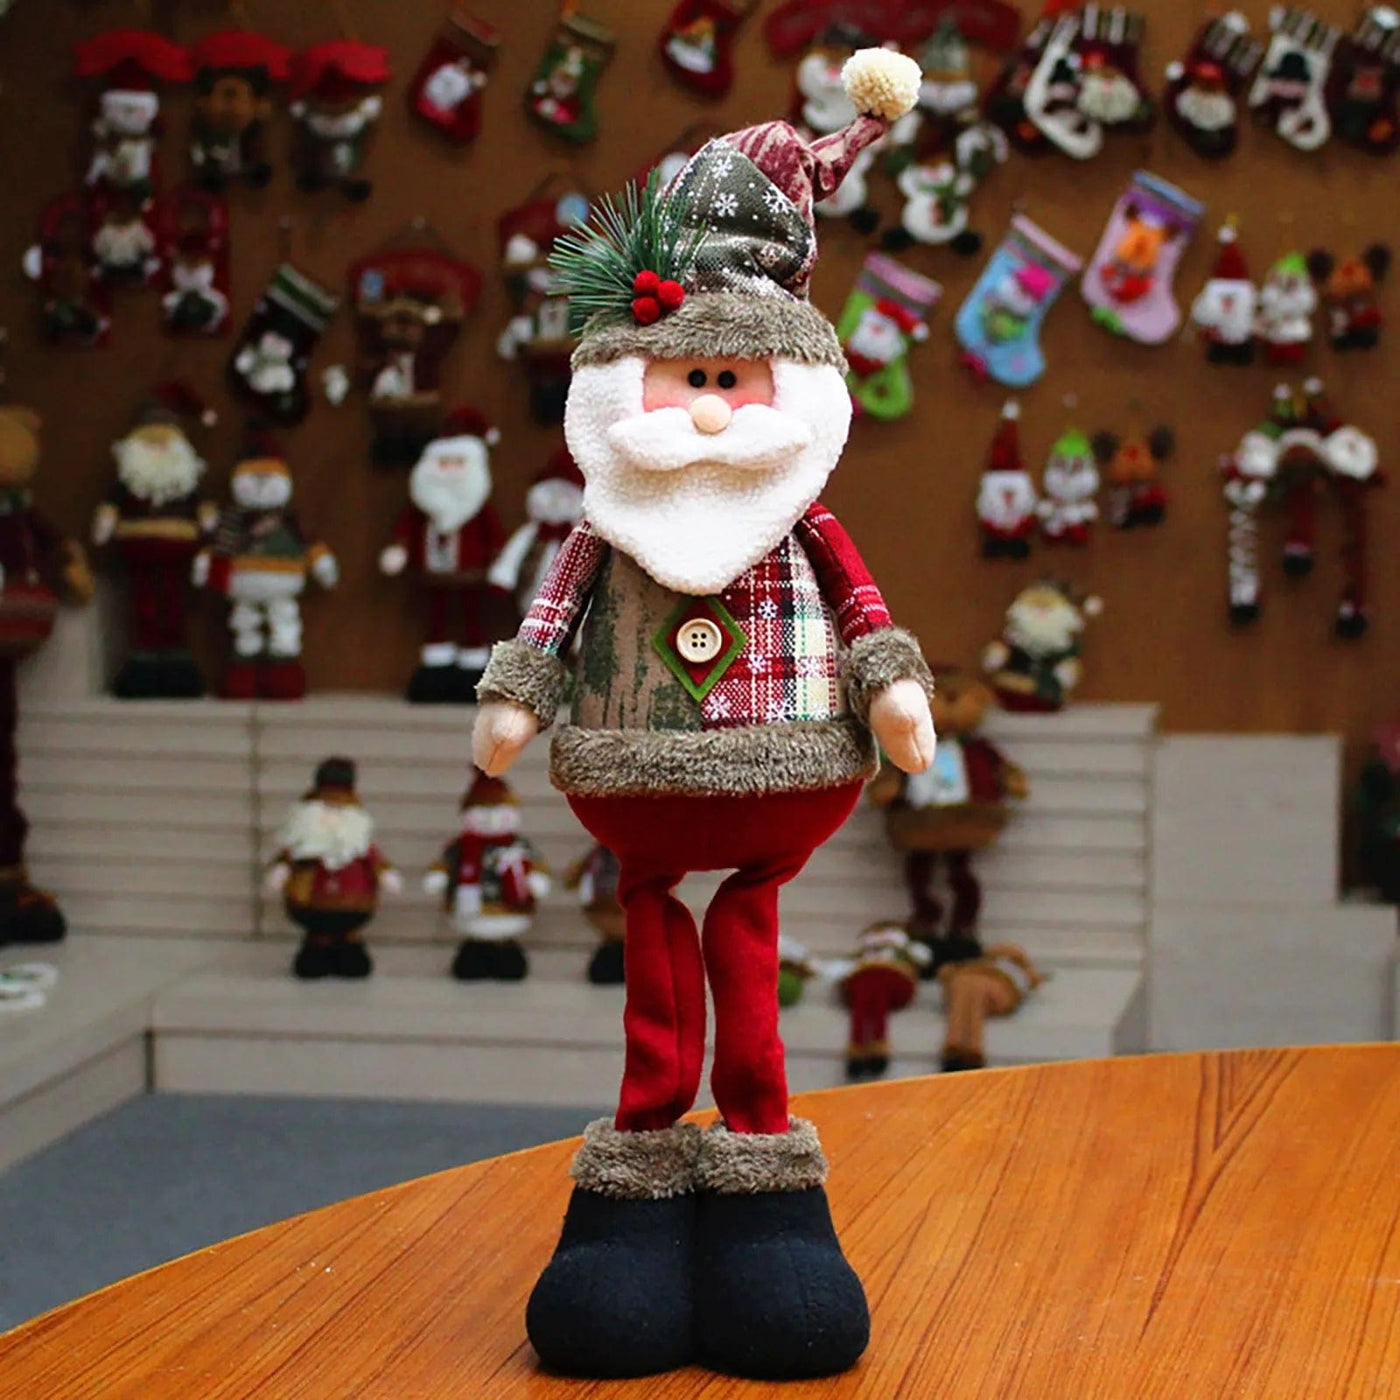 wickedafstore A Santa, Snowman, and Reindeer Figurines